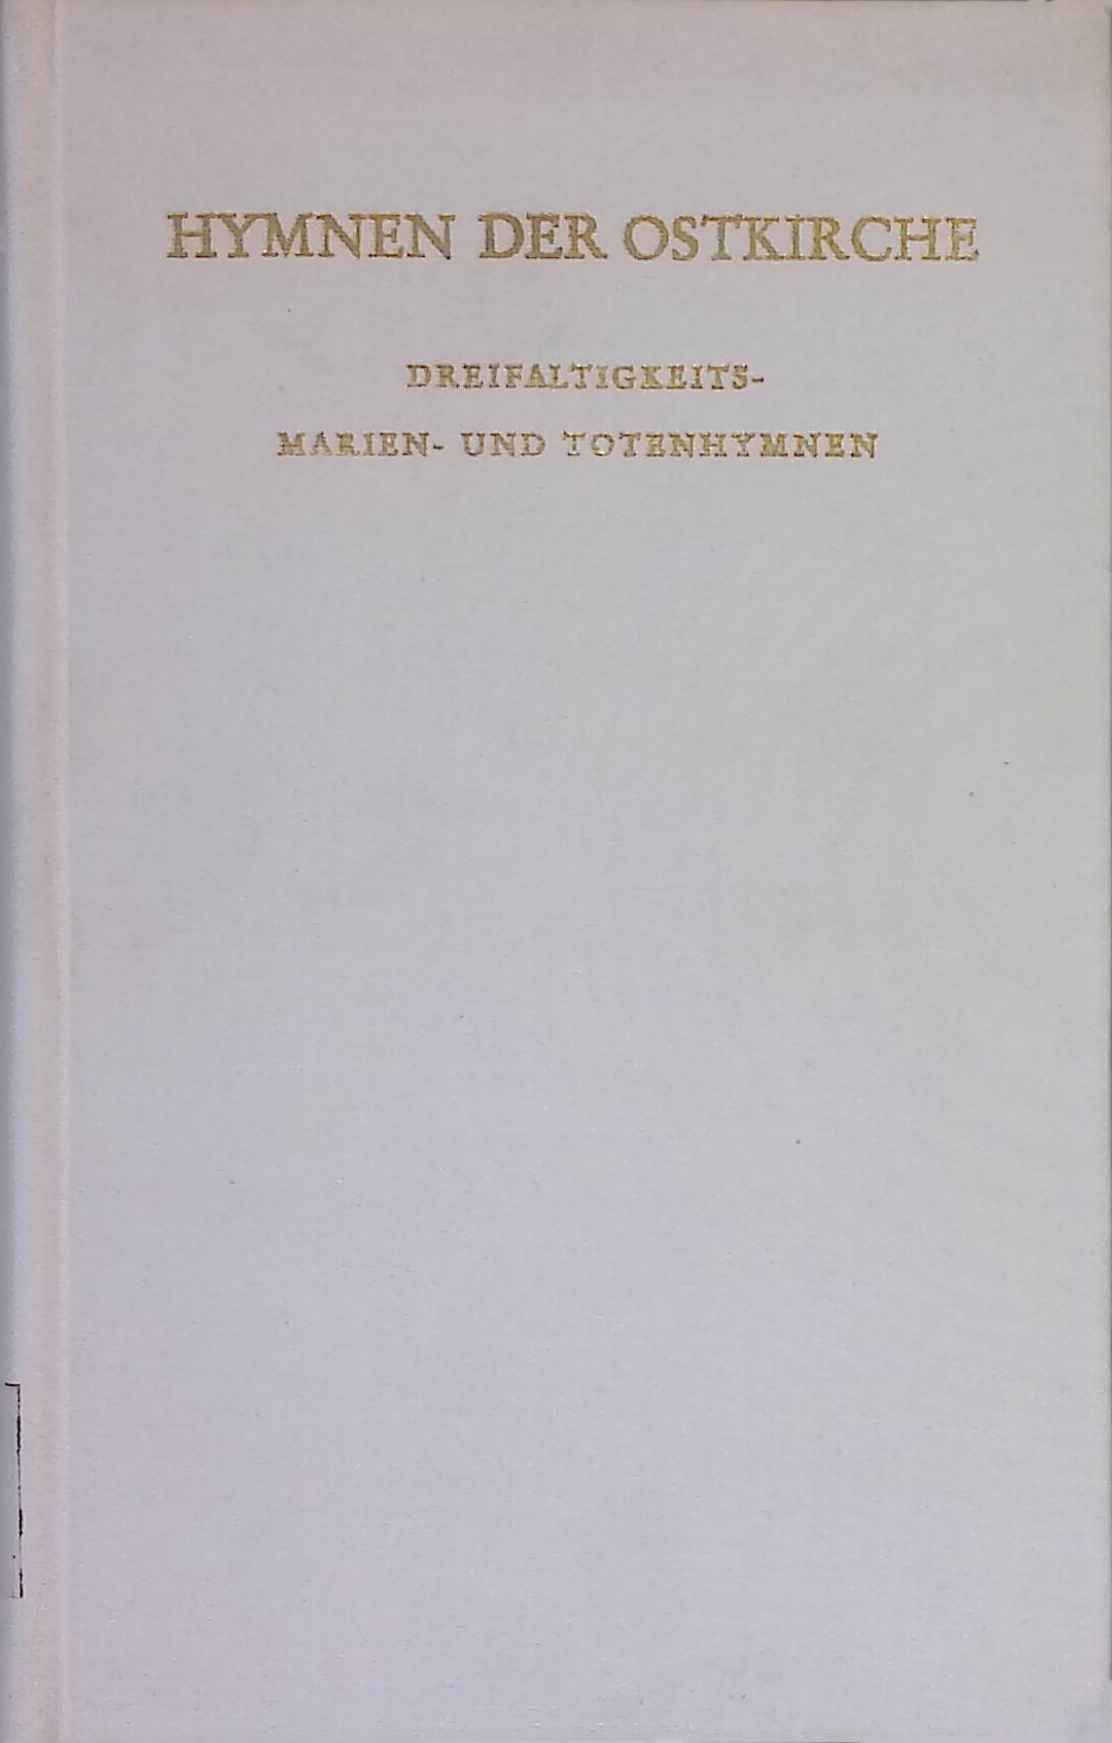 Hymnen der Ostkirche : Dreifaltigkeits-, Marien- u. Totenhymnen. - Kirchhoff, Kilian und Chrysologus Schollmeyer